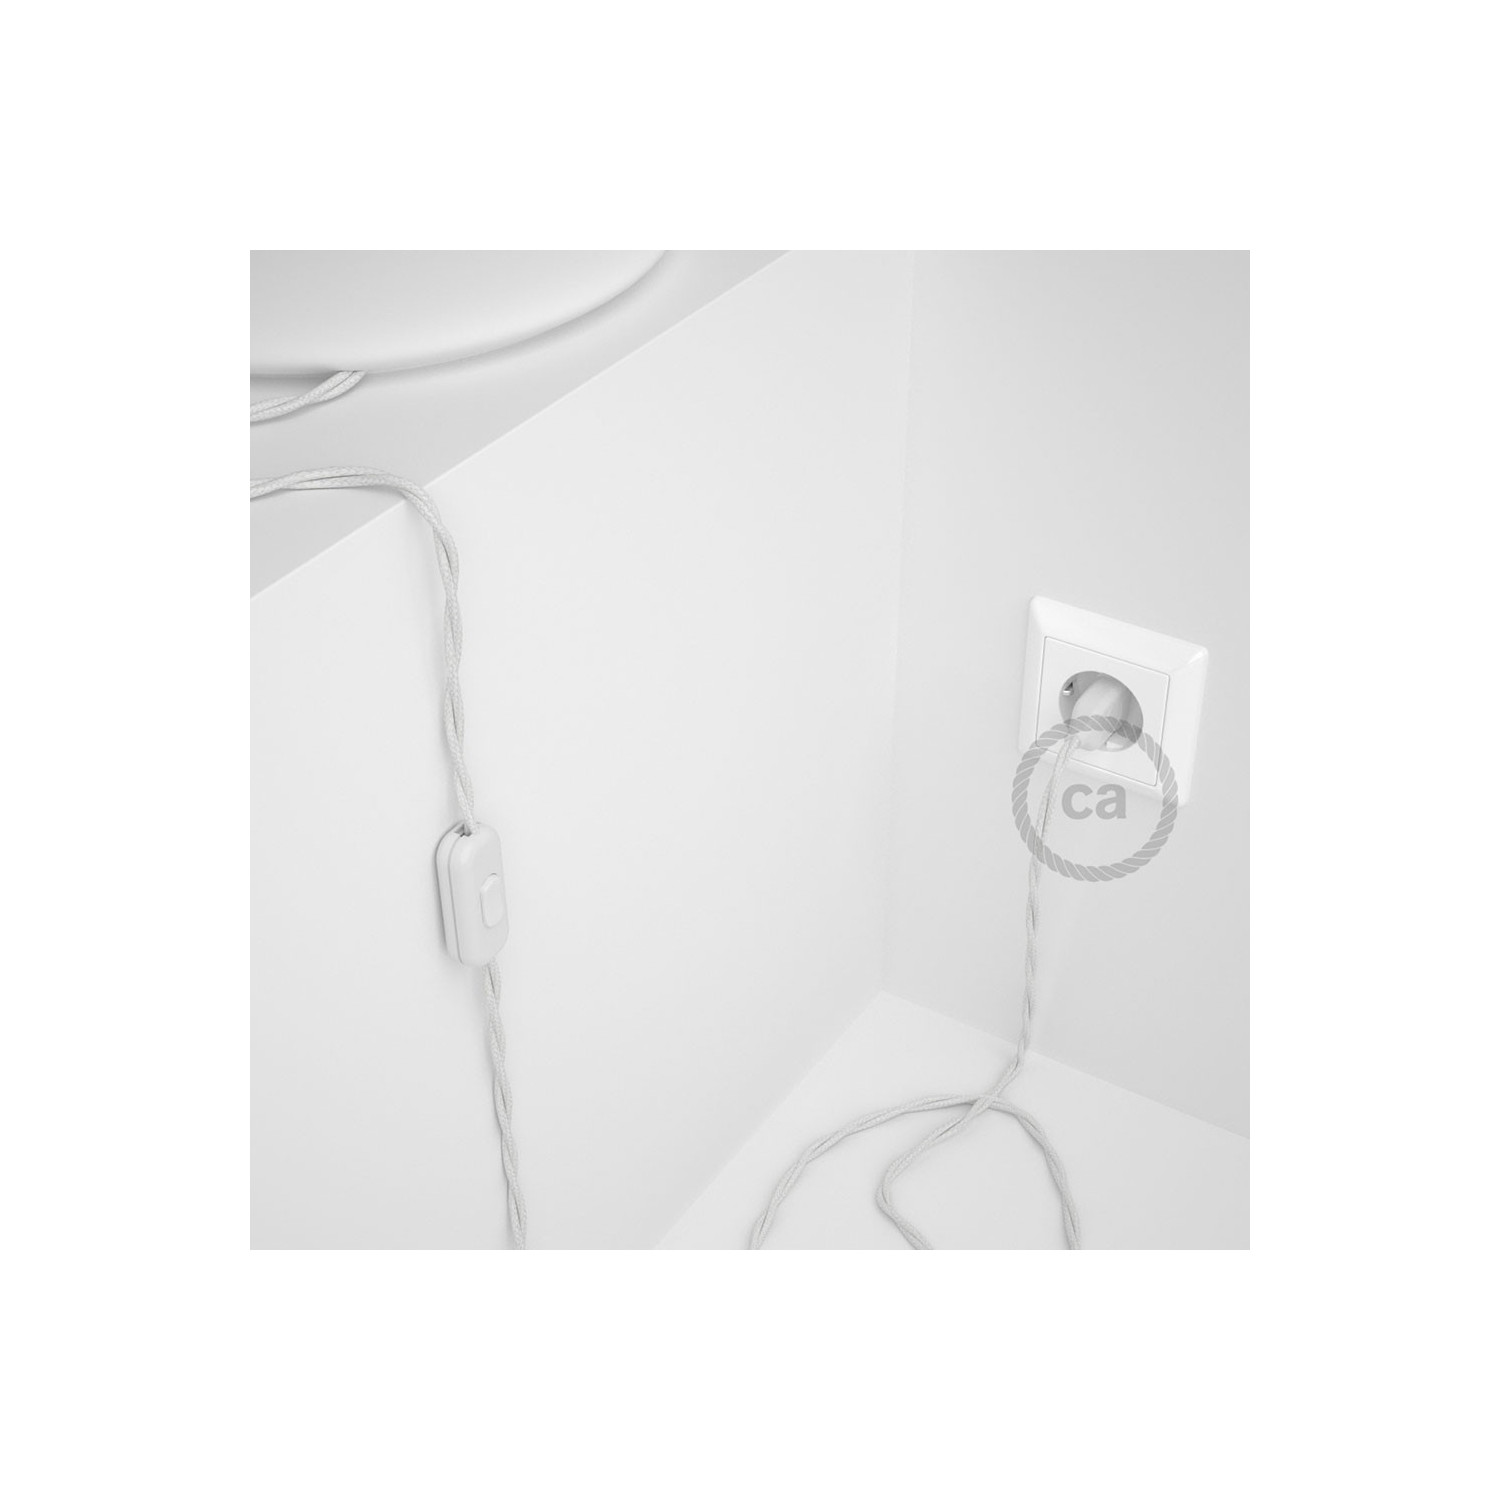 Cablaggio per lampada, cavo TC01 Cotone Bianco 1,80 m. Scegli il colore dell'interuttore e della spina.